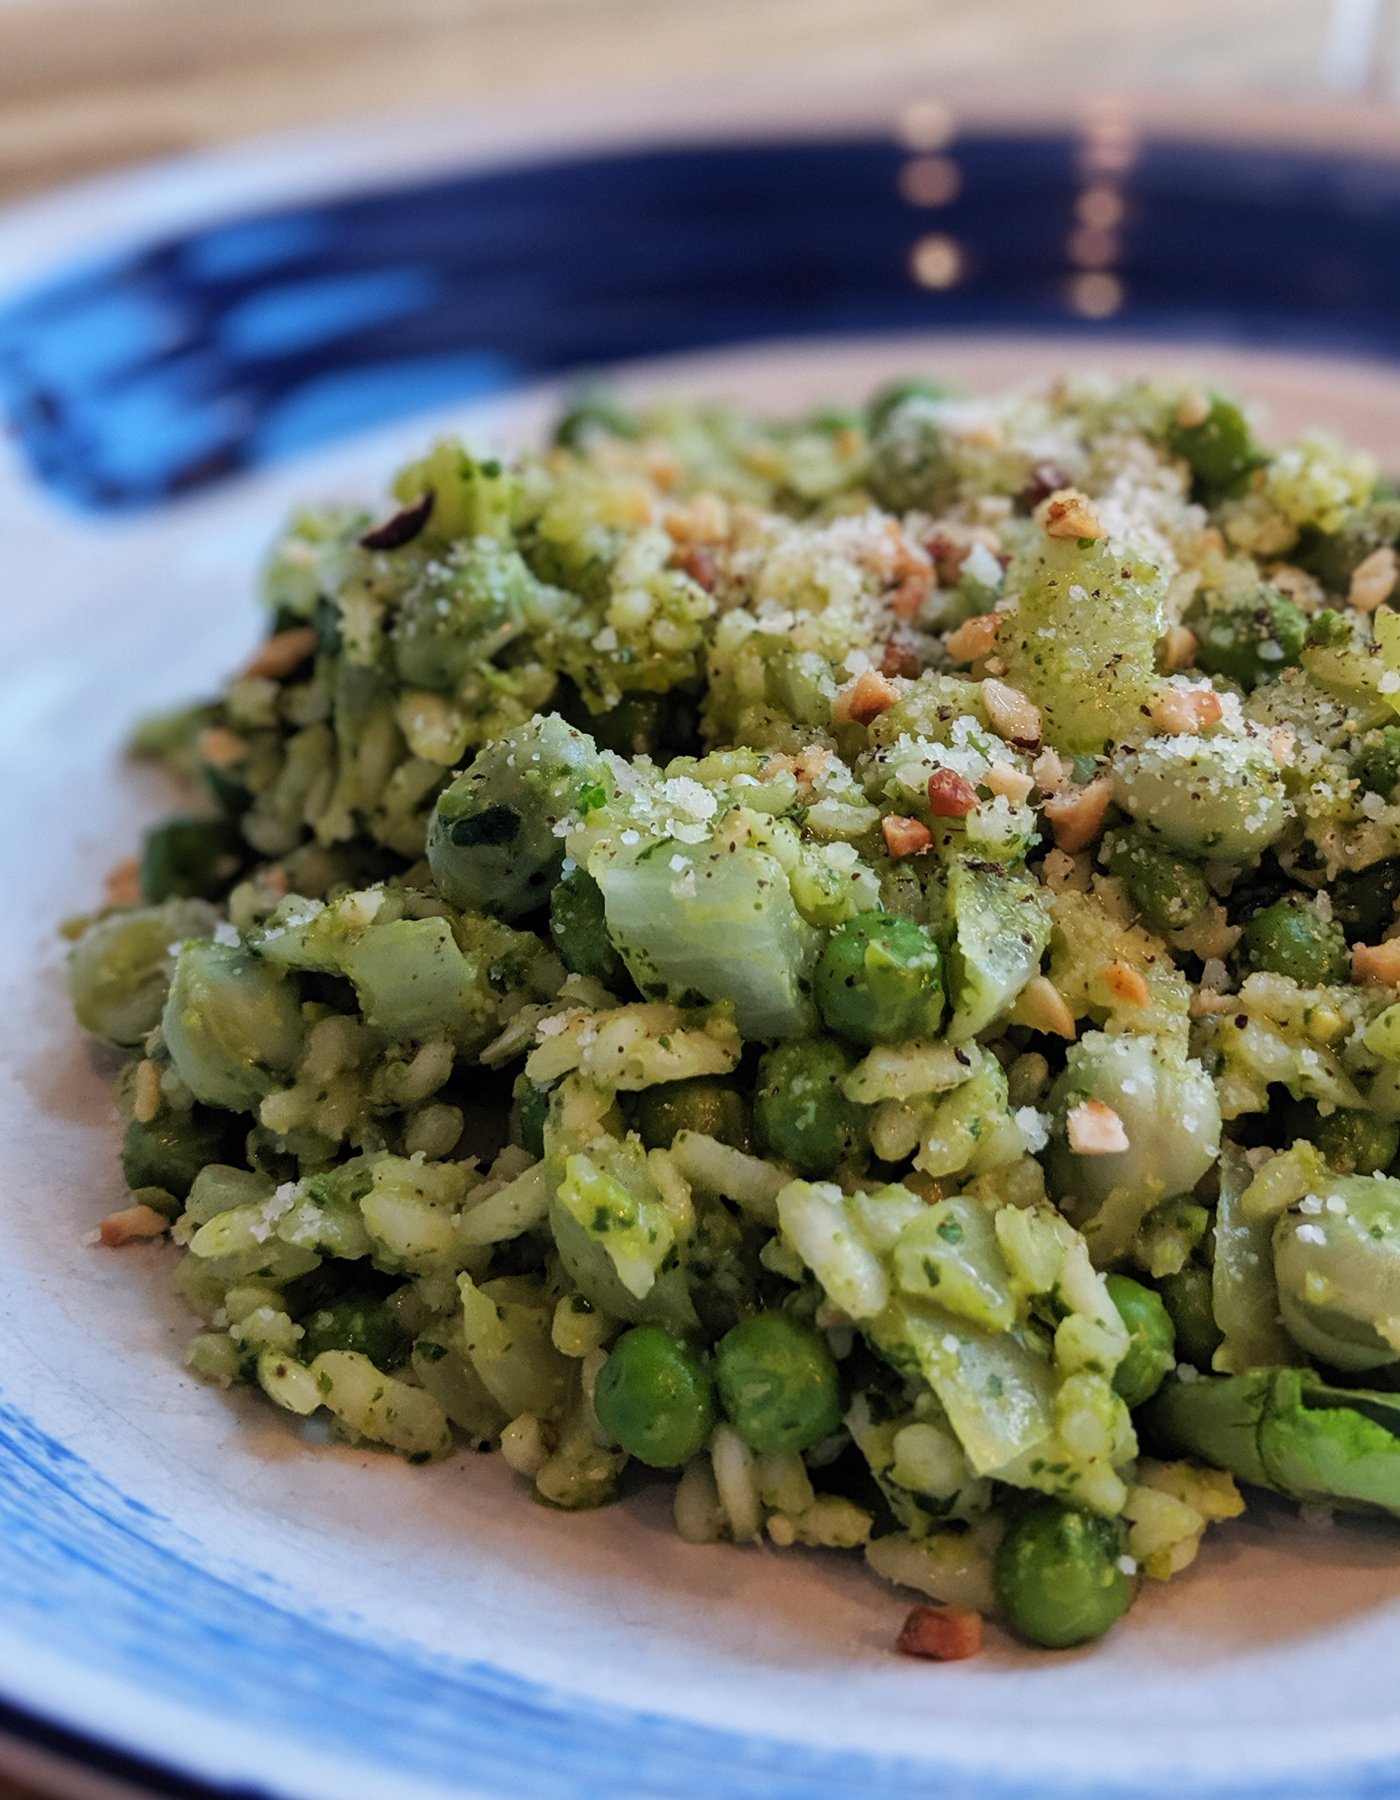 Pea & spinach risotto recipe